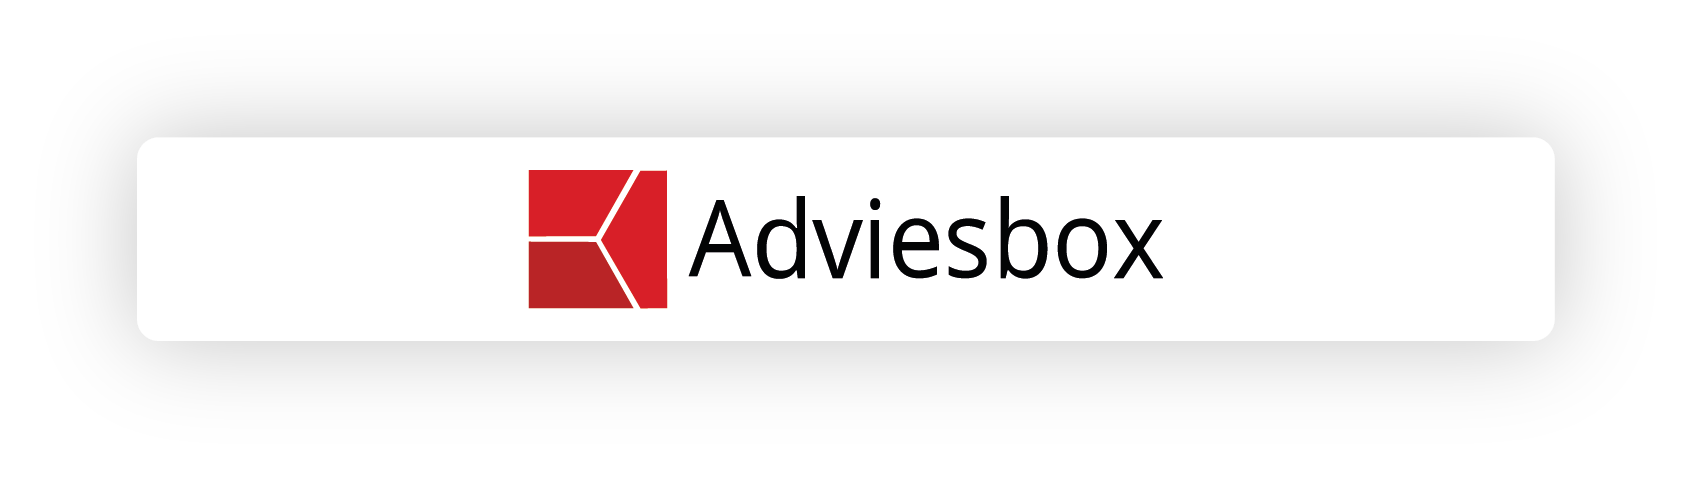 Adviesbox koppeling